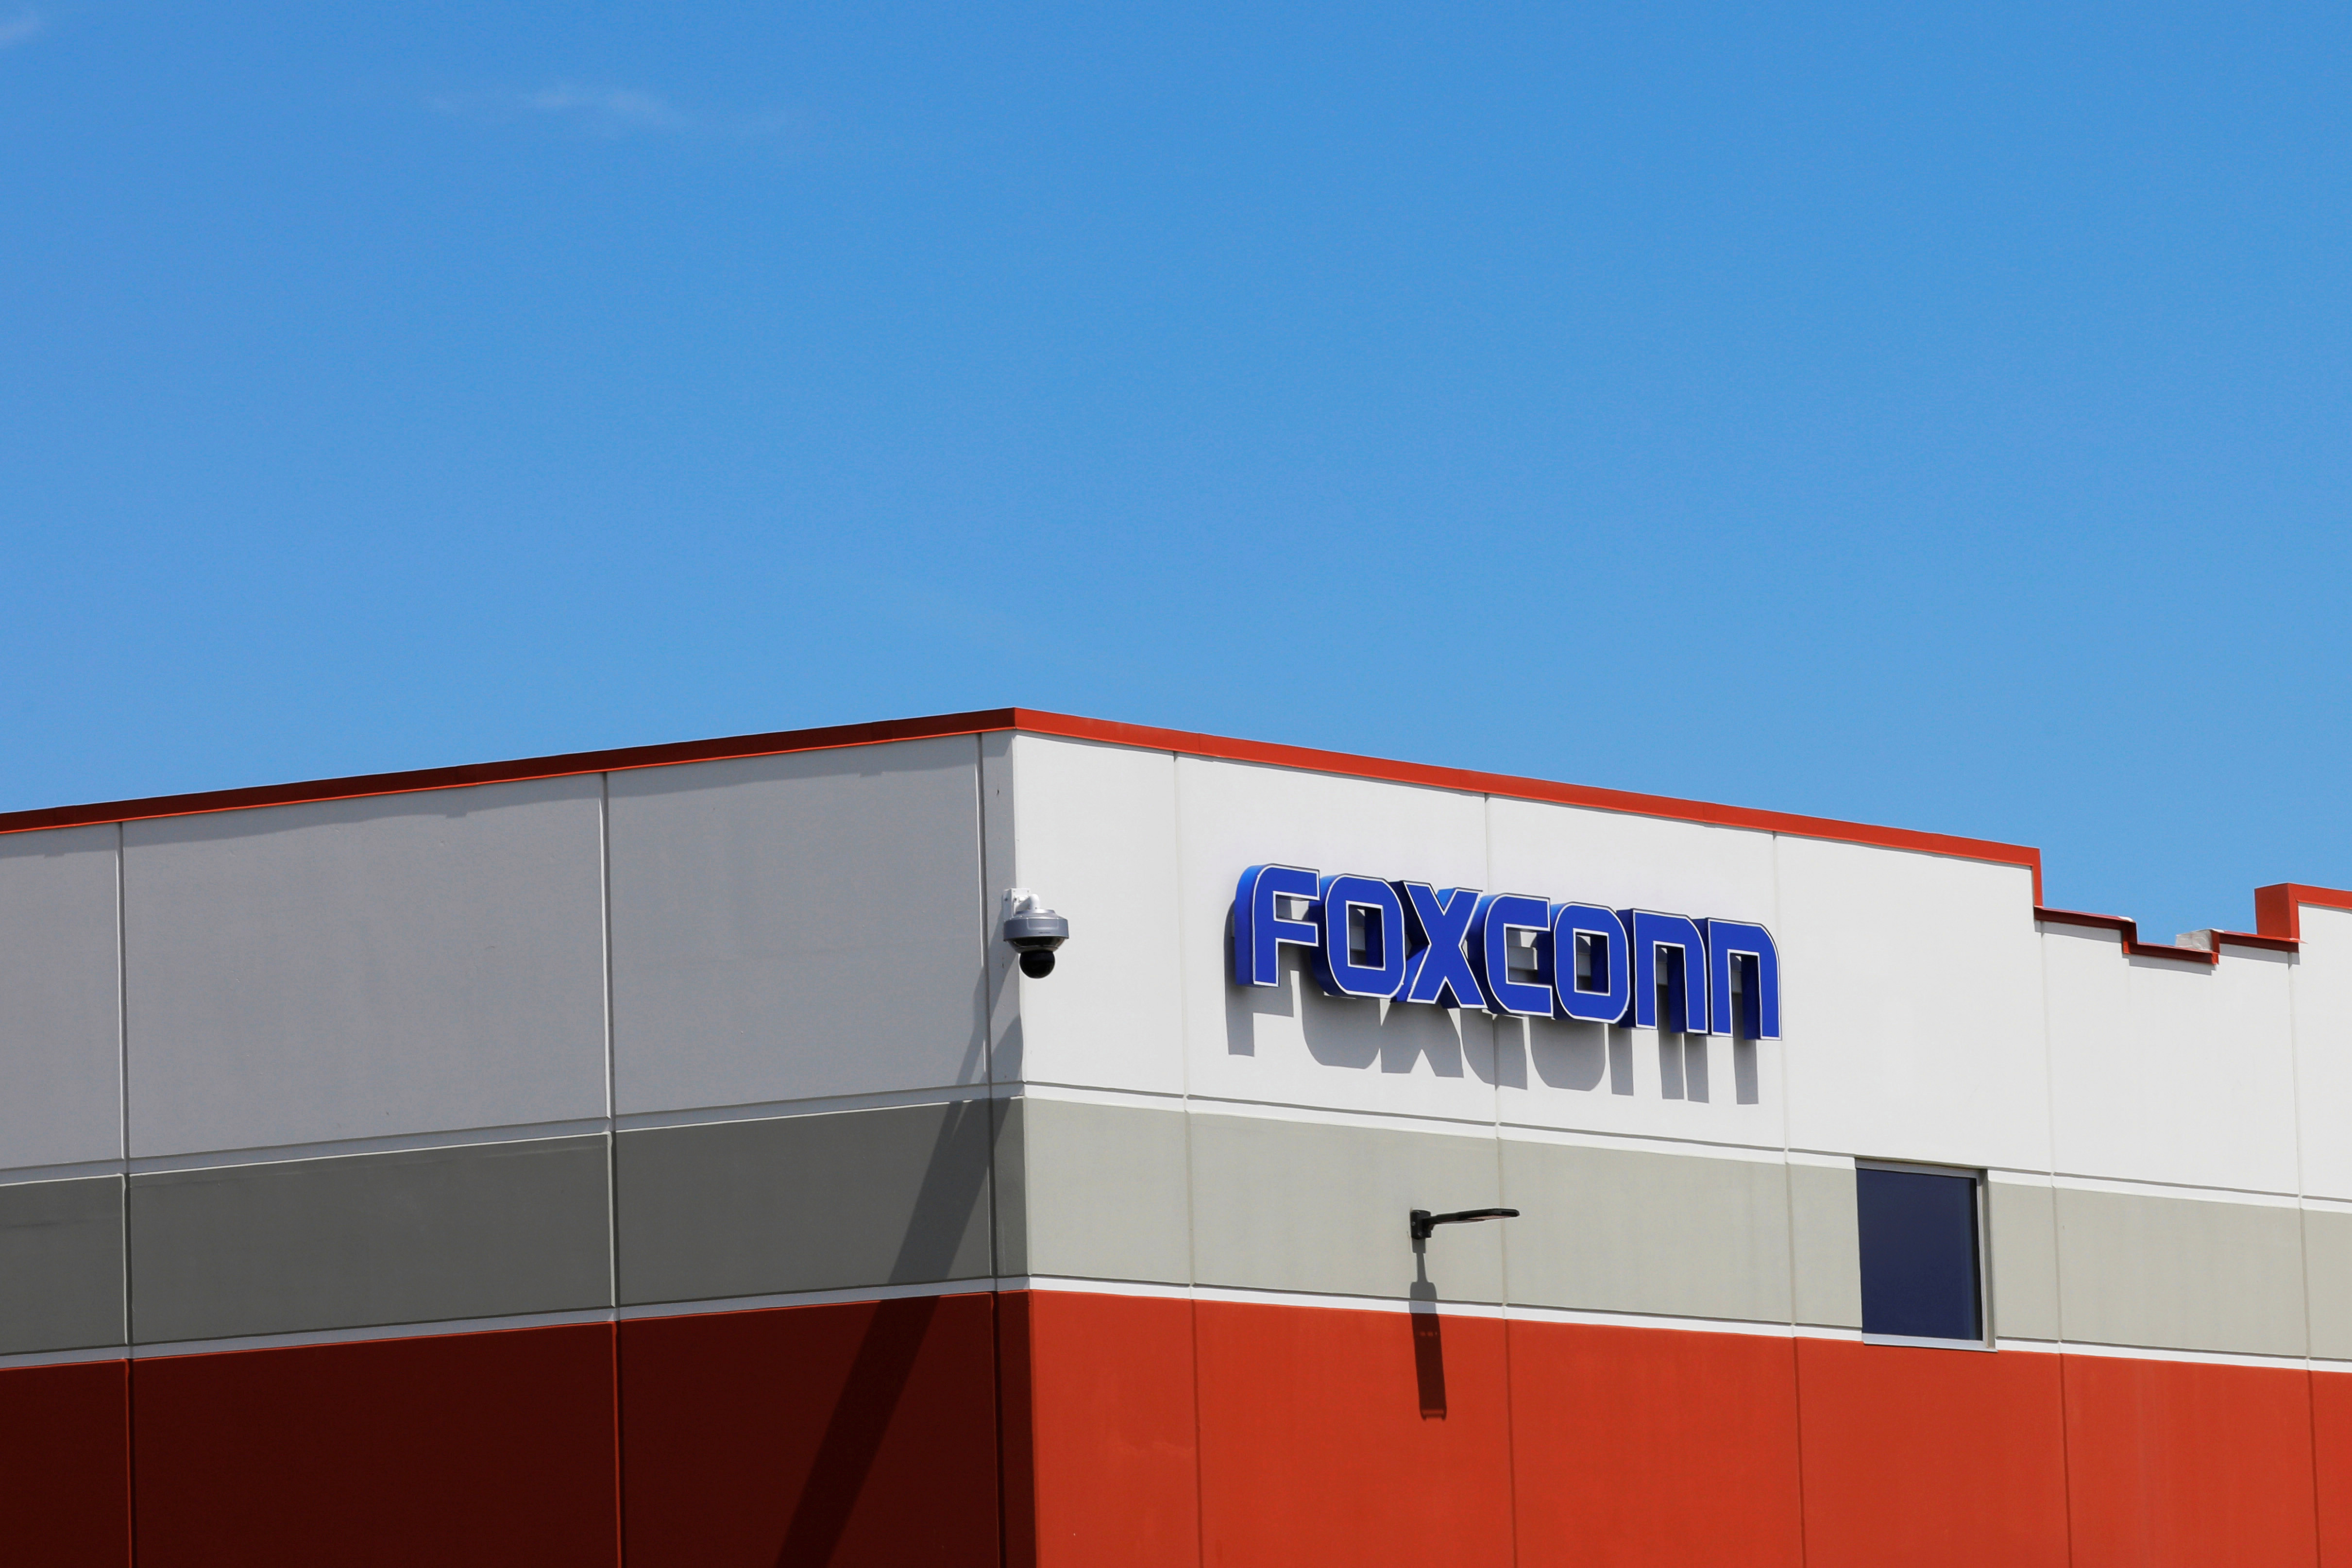   Foxconn säger att det kommer att se till att det inte bryter mot arbetslagar - Amazon säger att det har inlett en utredning under tiden